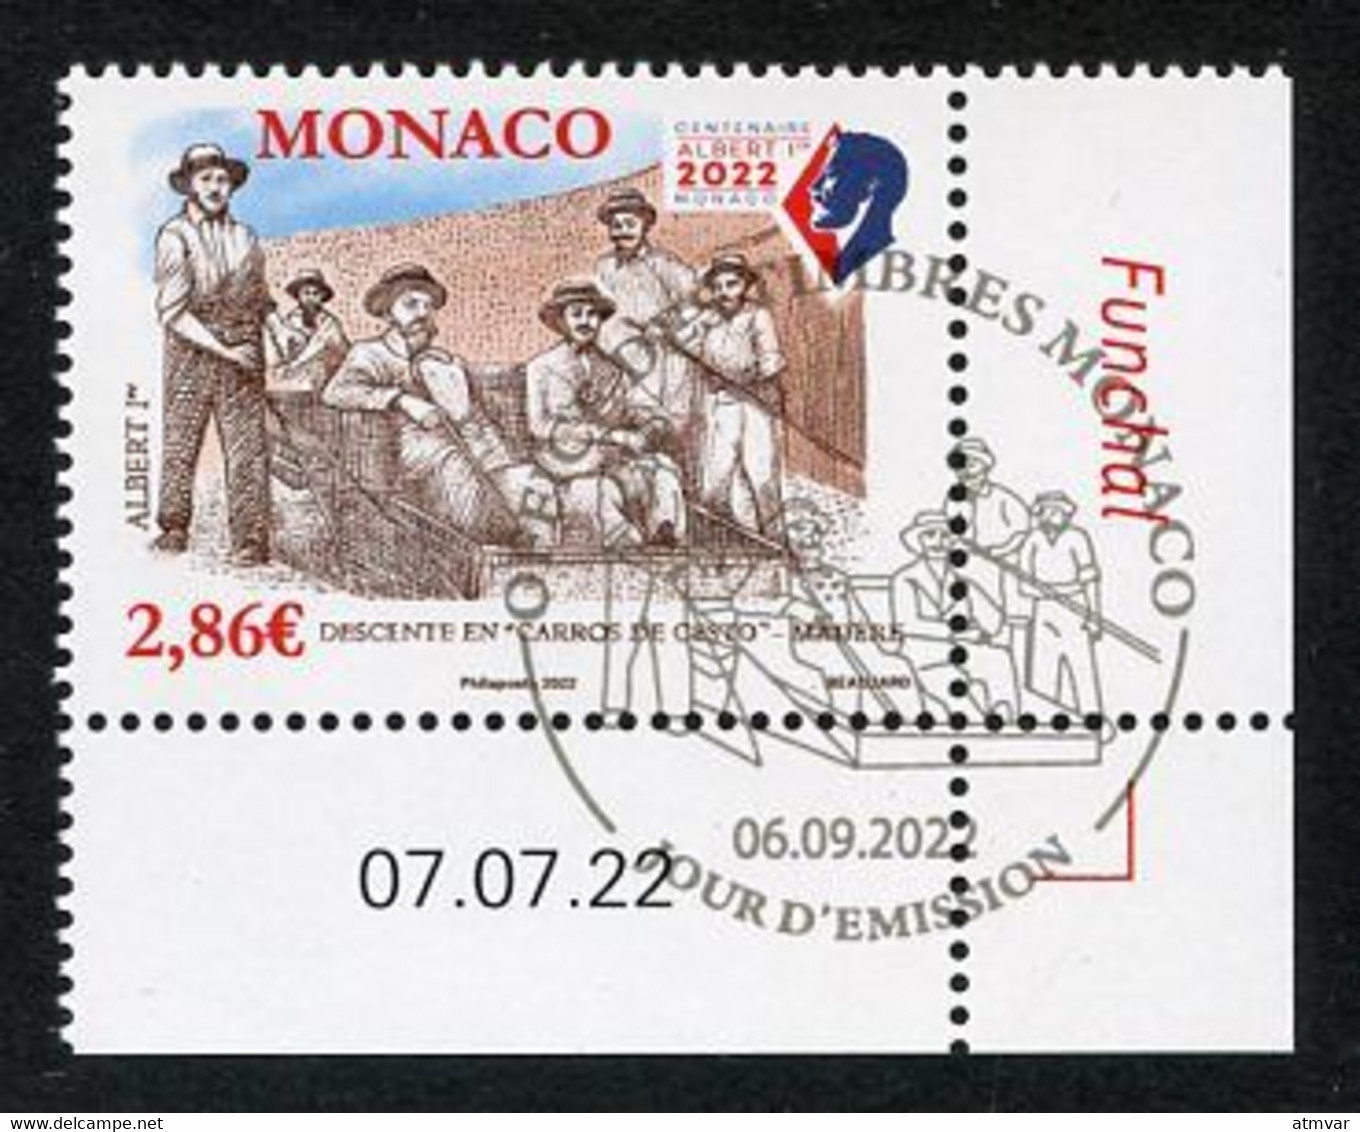 MONACO (2022) Albert 1er Madère Madeira Funchal, Descente En Carros De Cesto - Coin Daté - Gebraucht